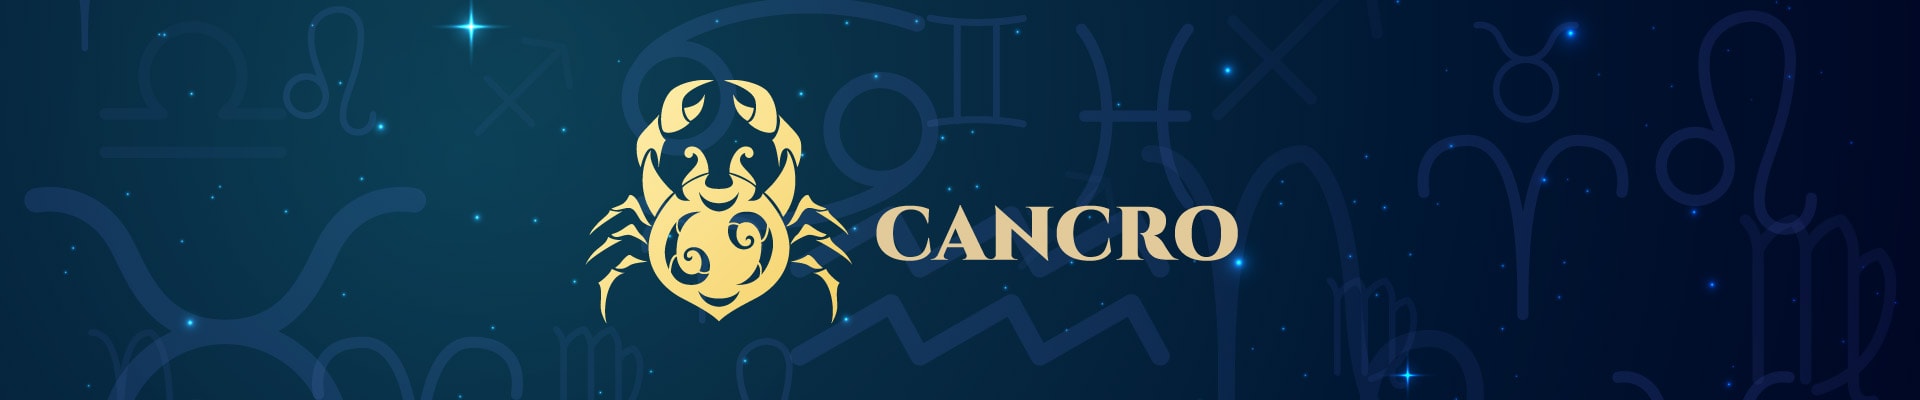 caratteristiche segno cancro